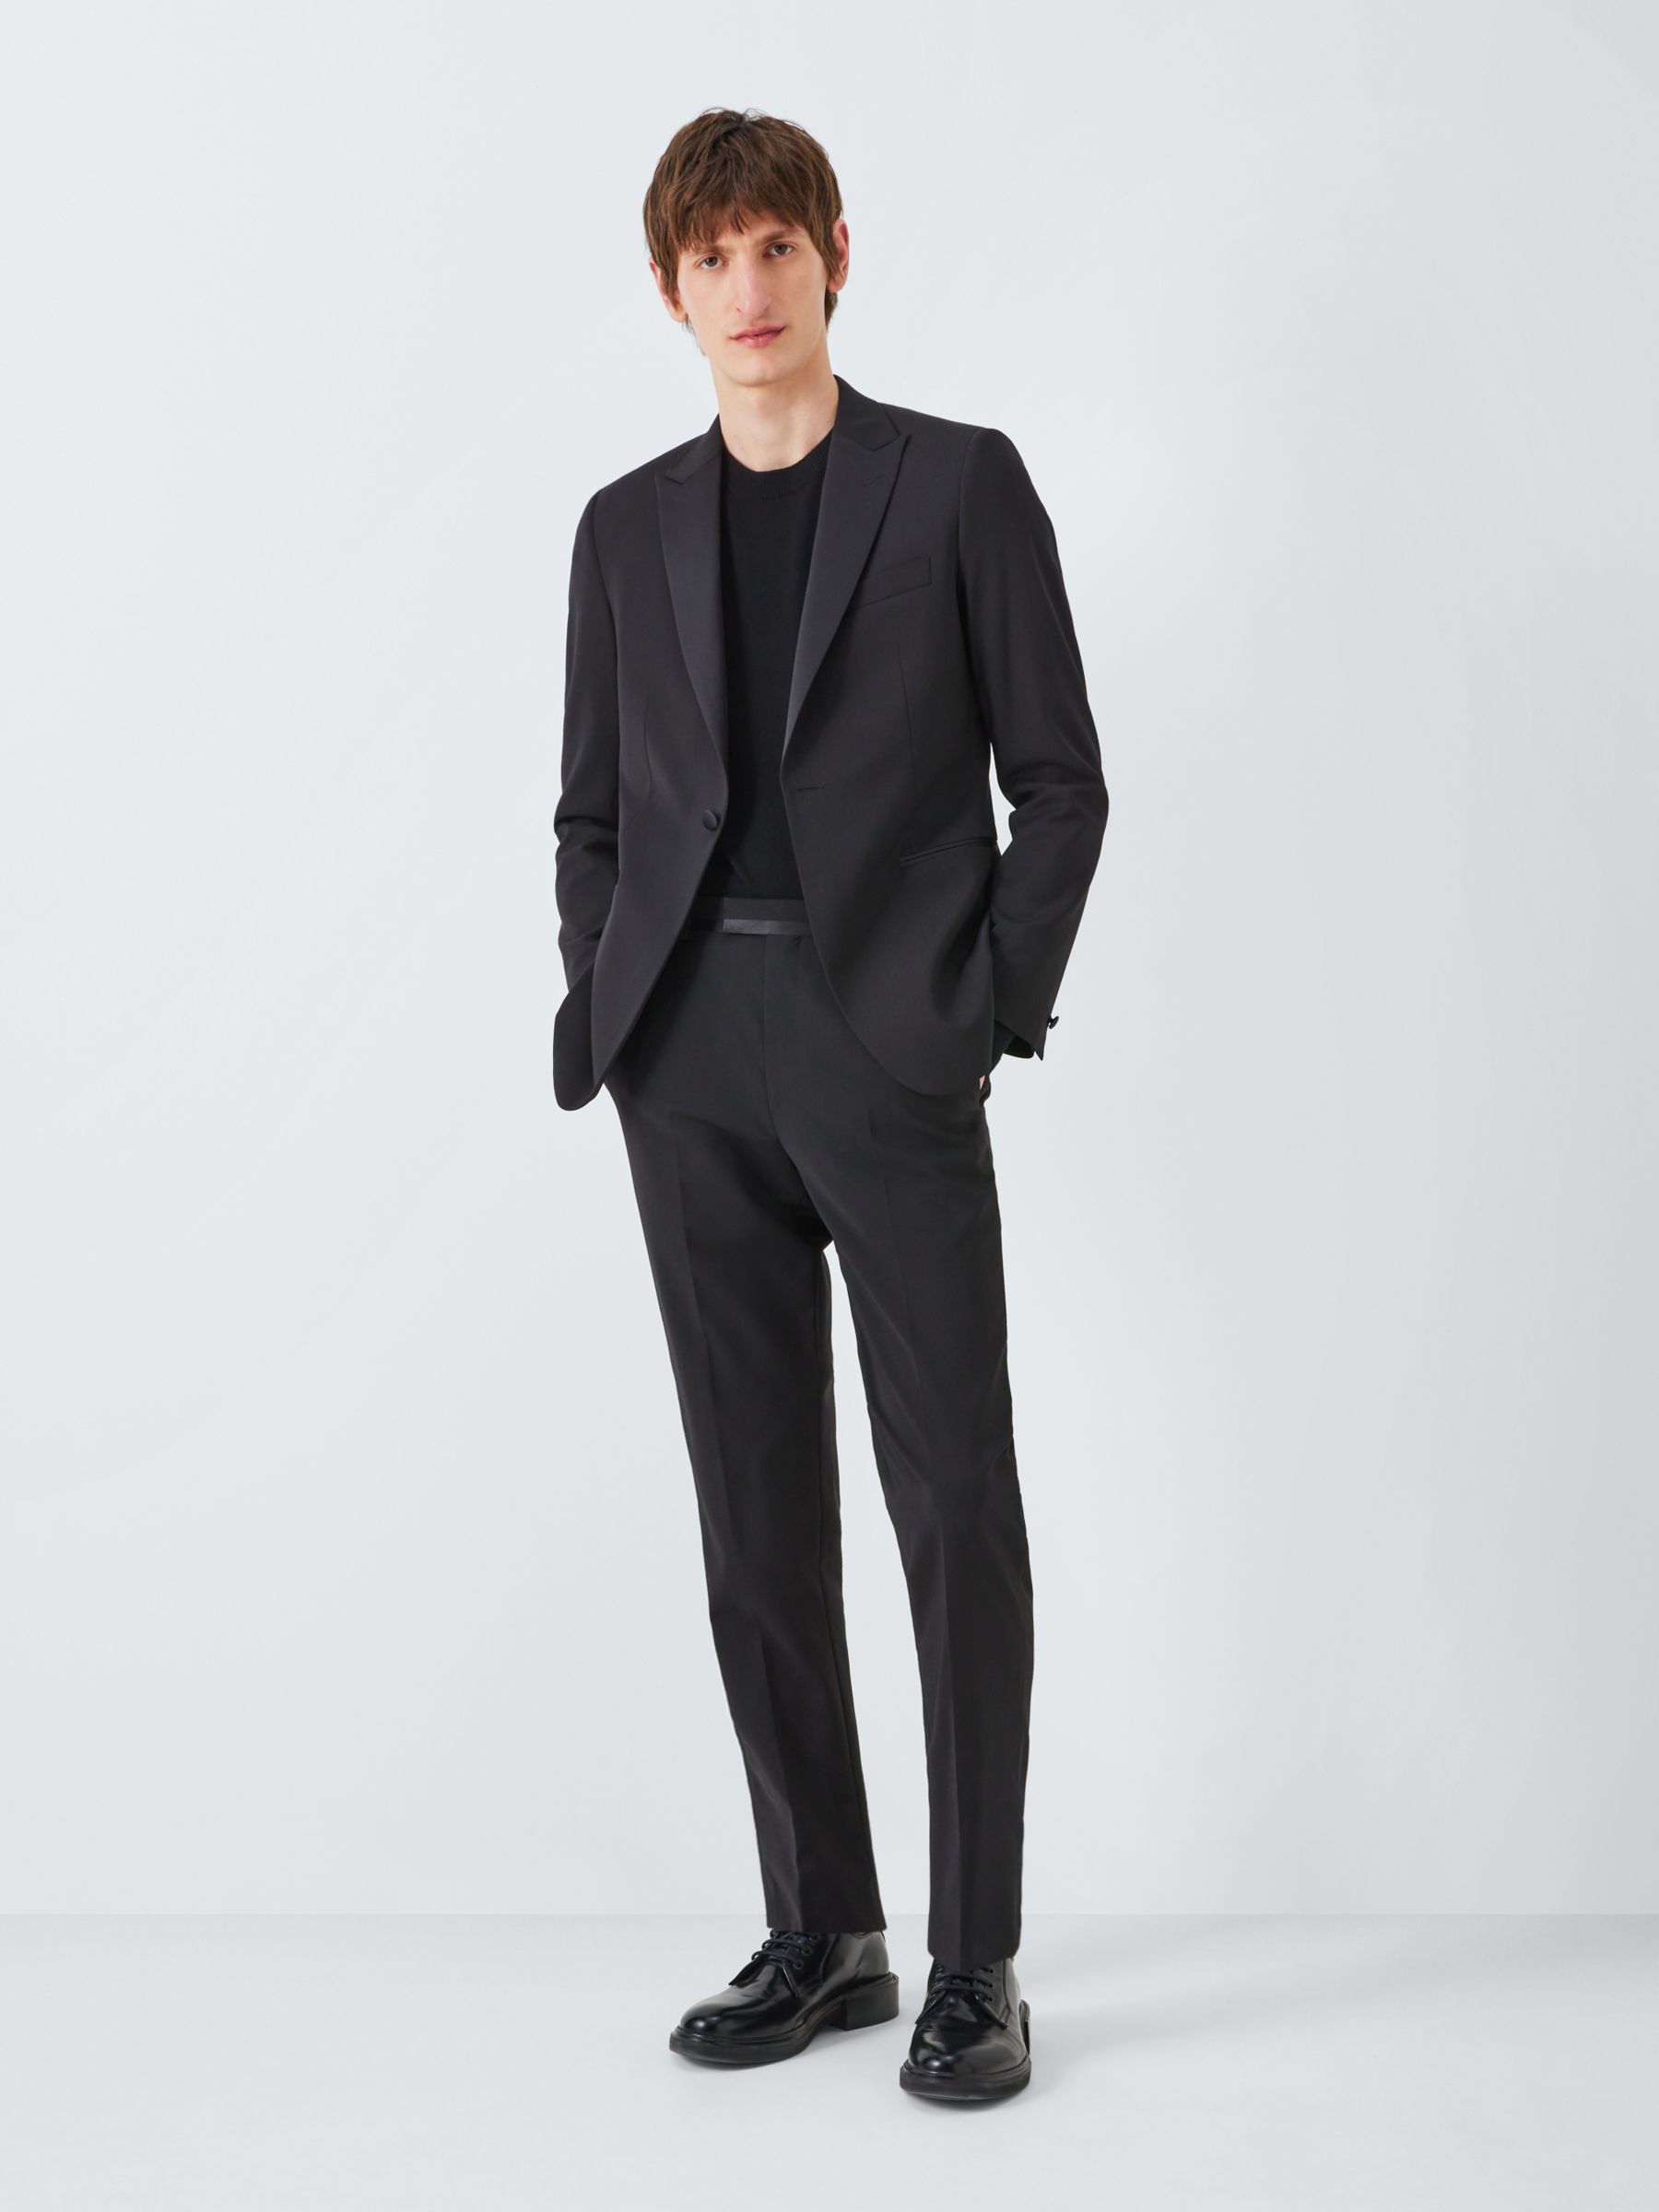 Kin Plain Slim Fit Dinner Suit Trousers, Black, 30R